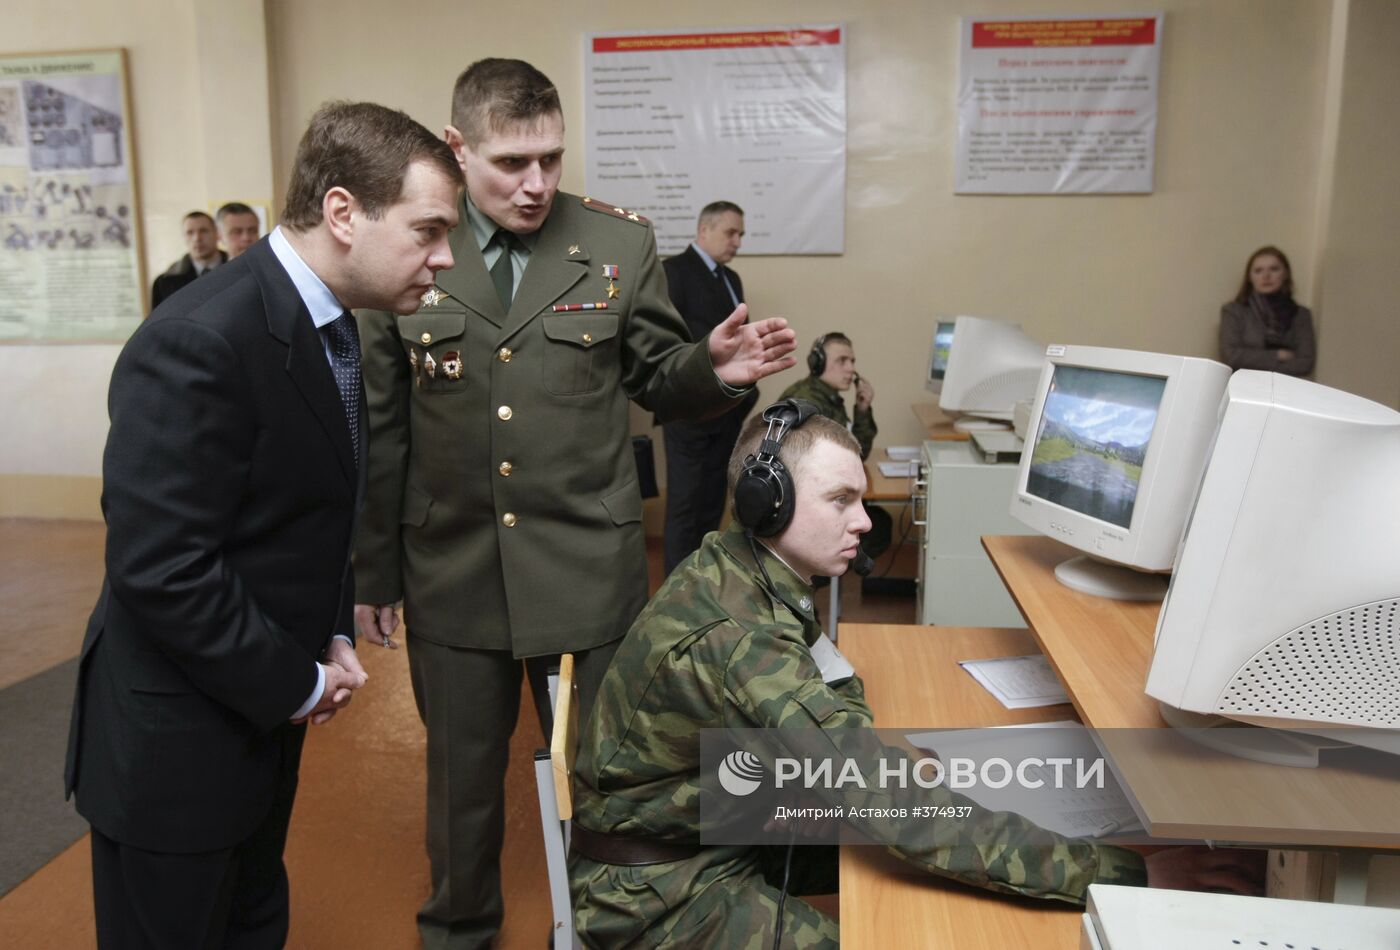 Д.Медведев посетил танковое училище в Чите